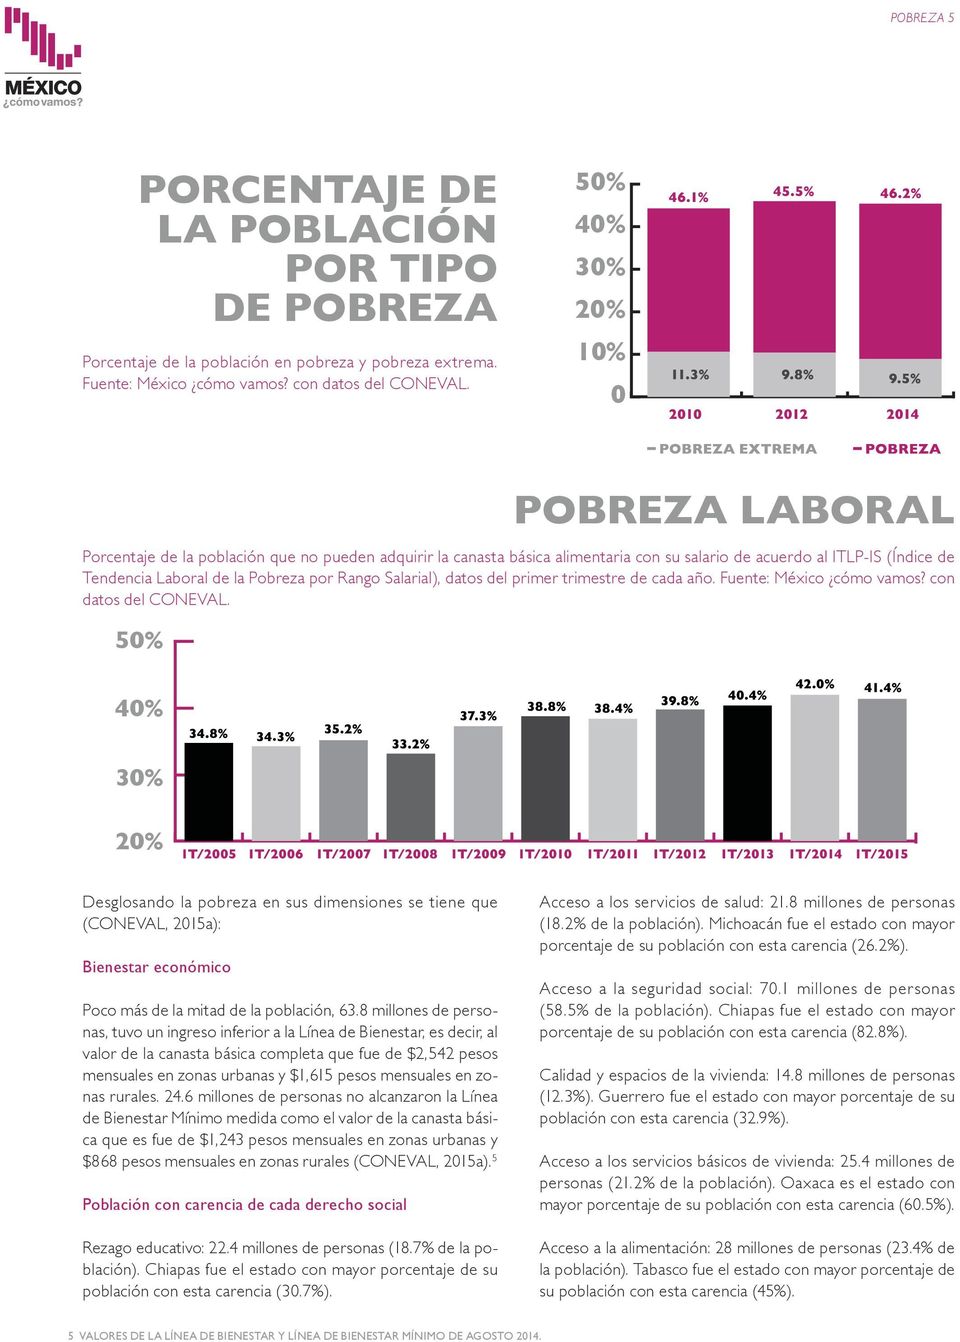 Salarial), datos del primer trimestre de cada año. Fuente: México cómo vamos? con datos del CONEVAL.